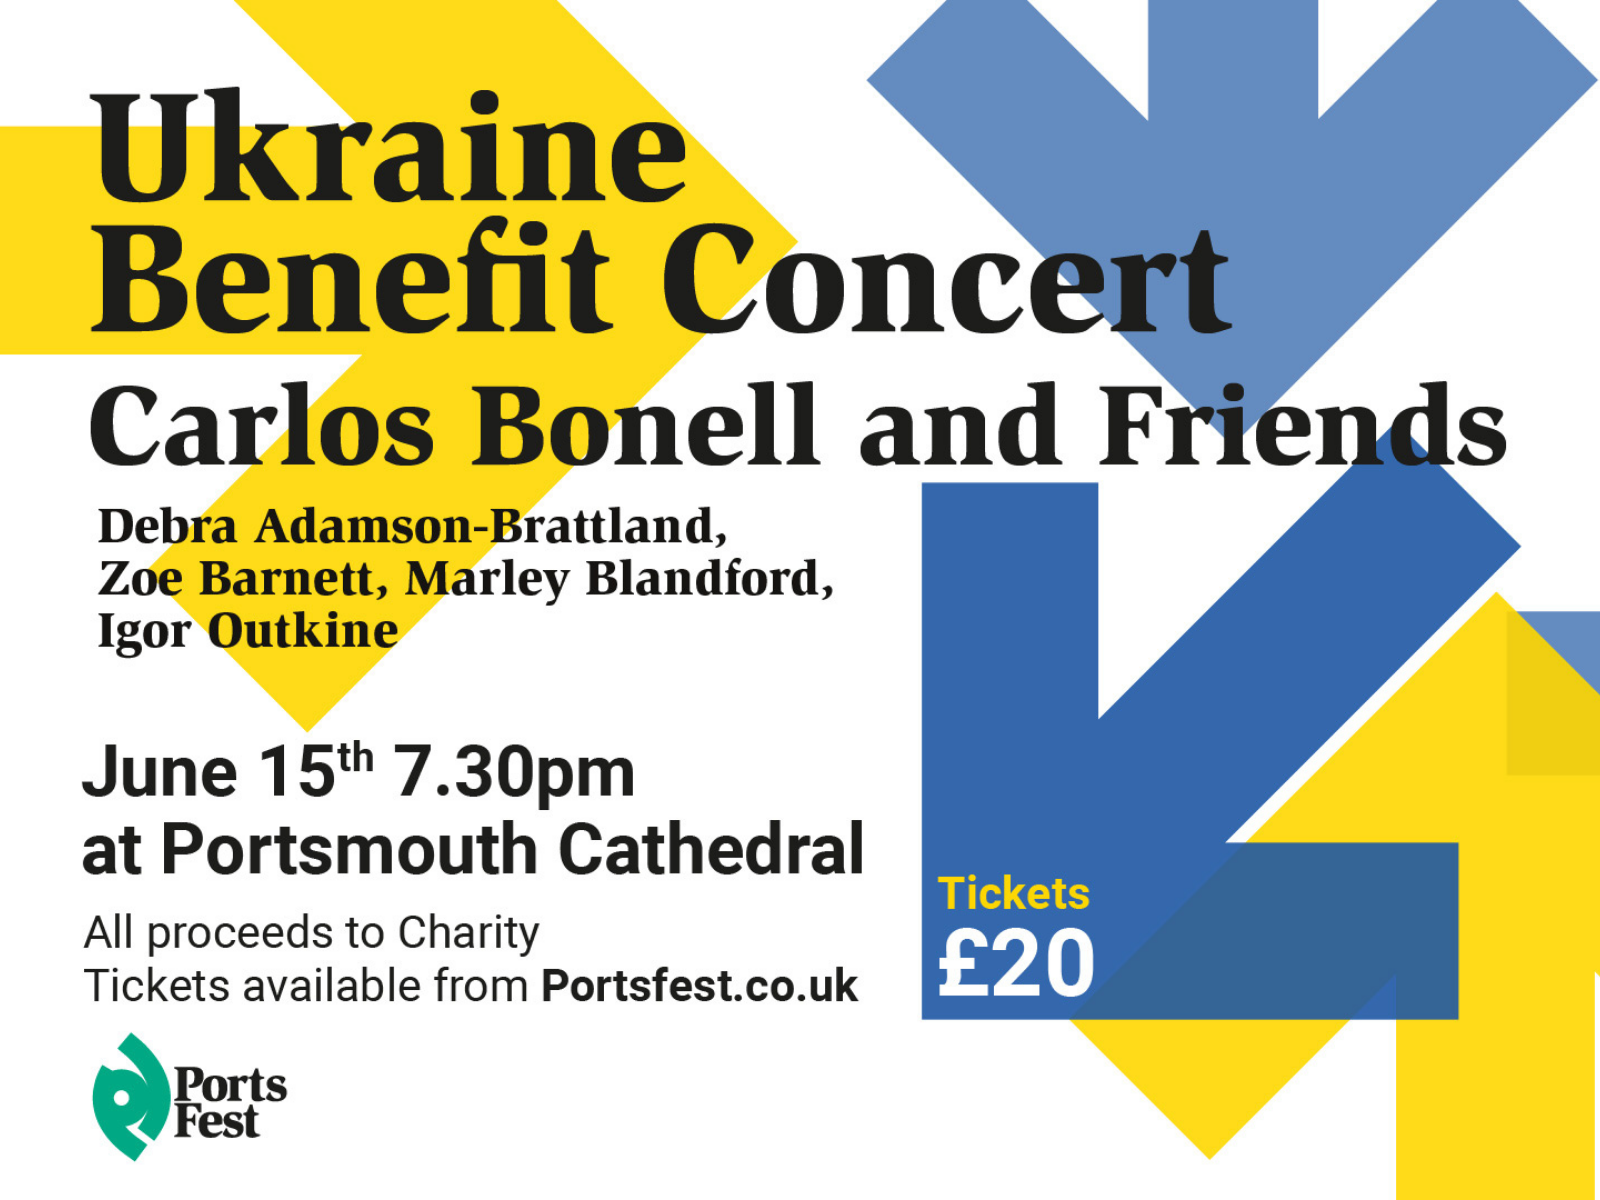 https://portsfest.co.uk/images/uploads/news/Ukraine_benefit_concert_website_%281%29.png